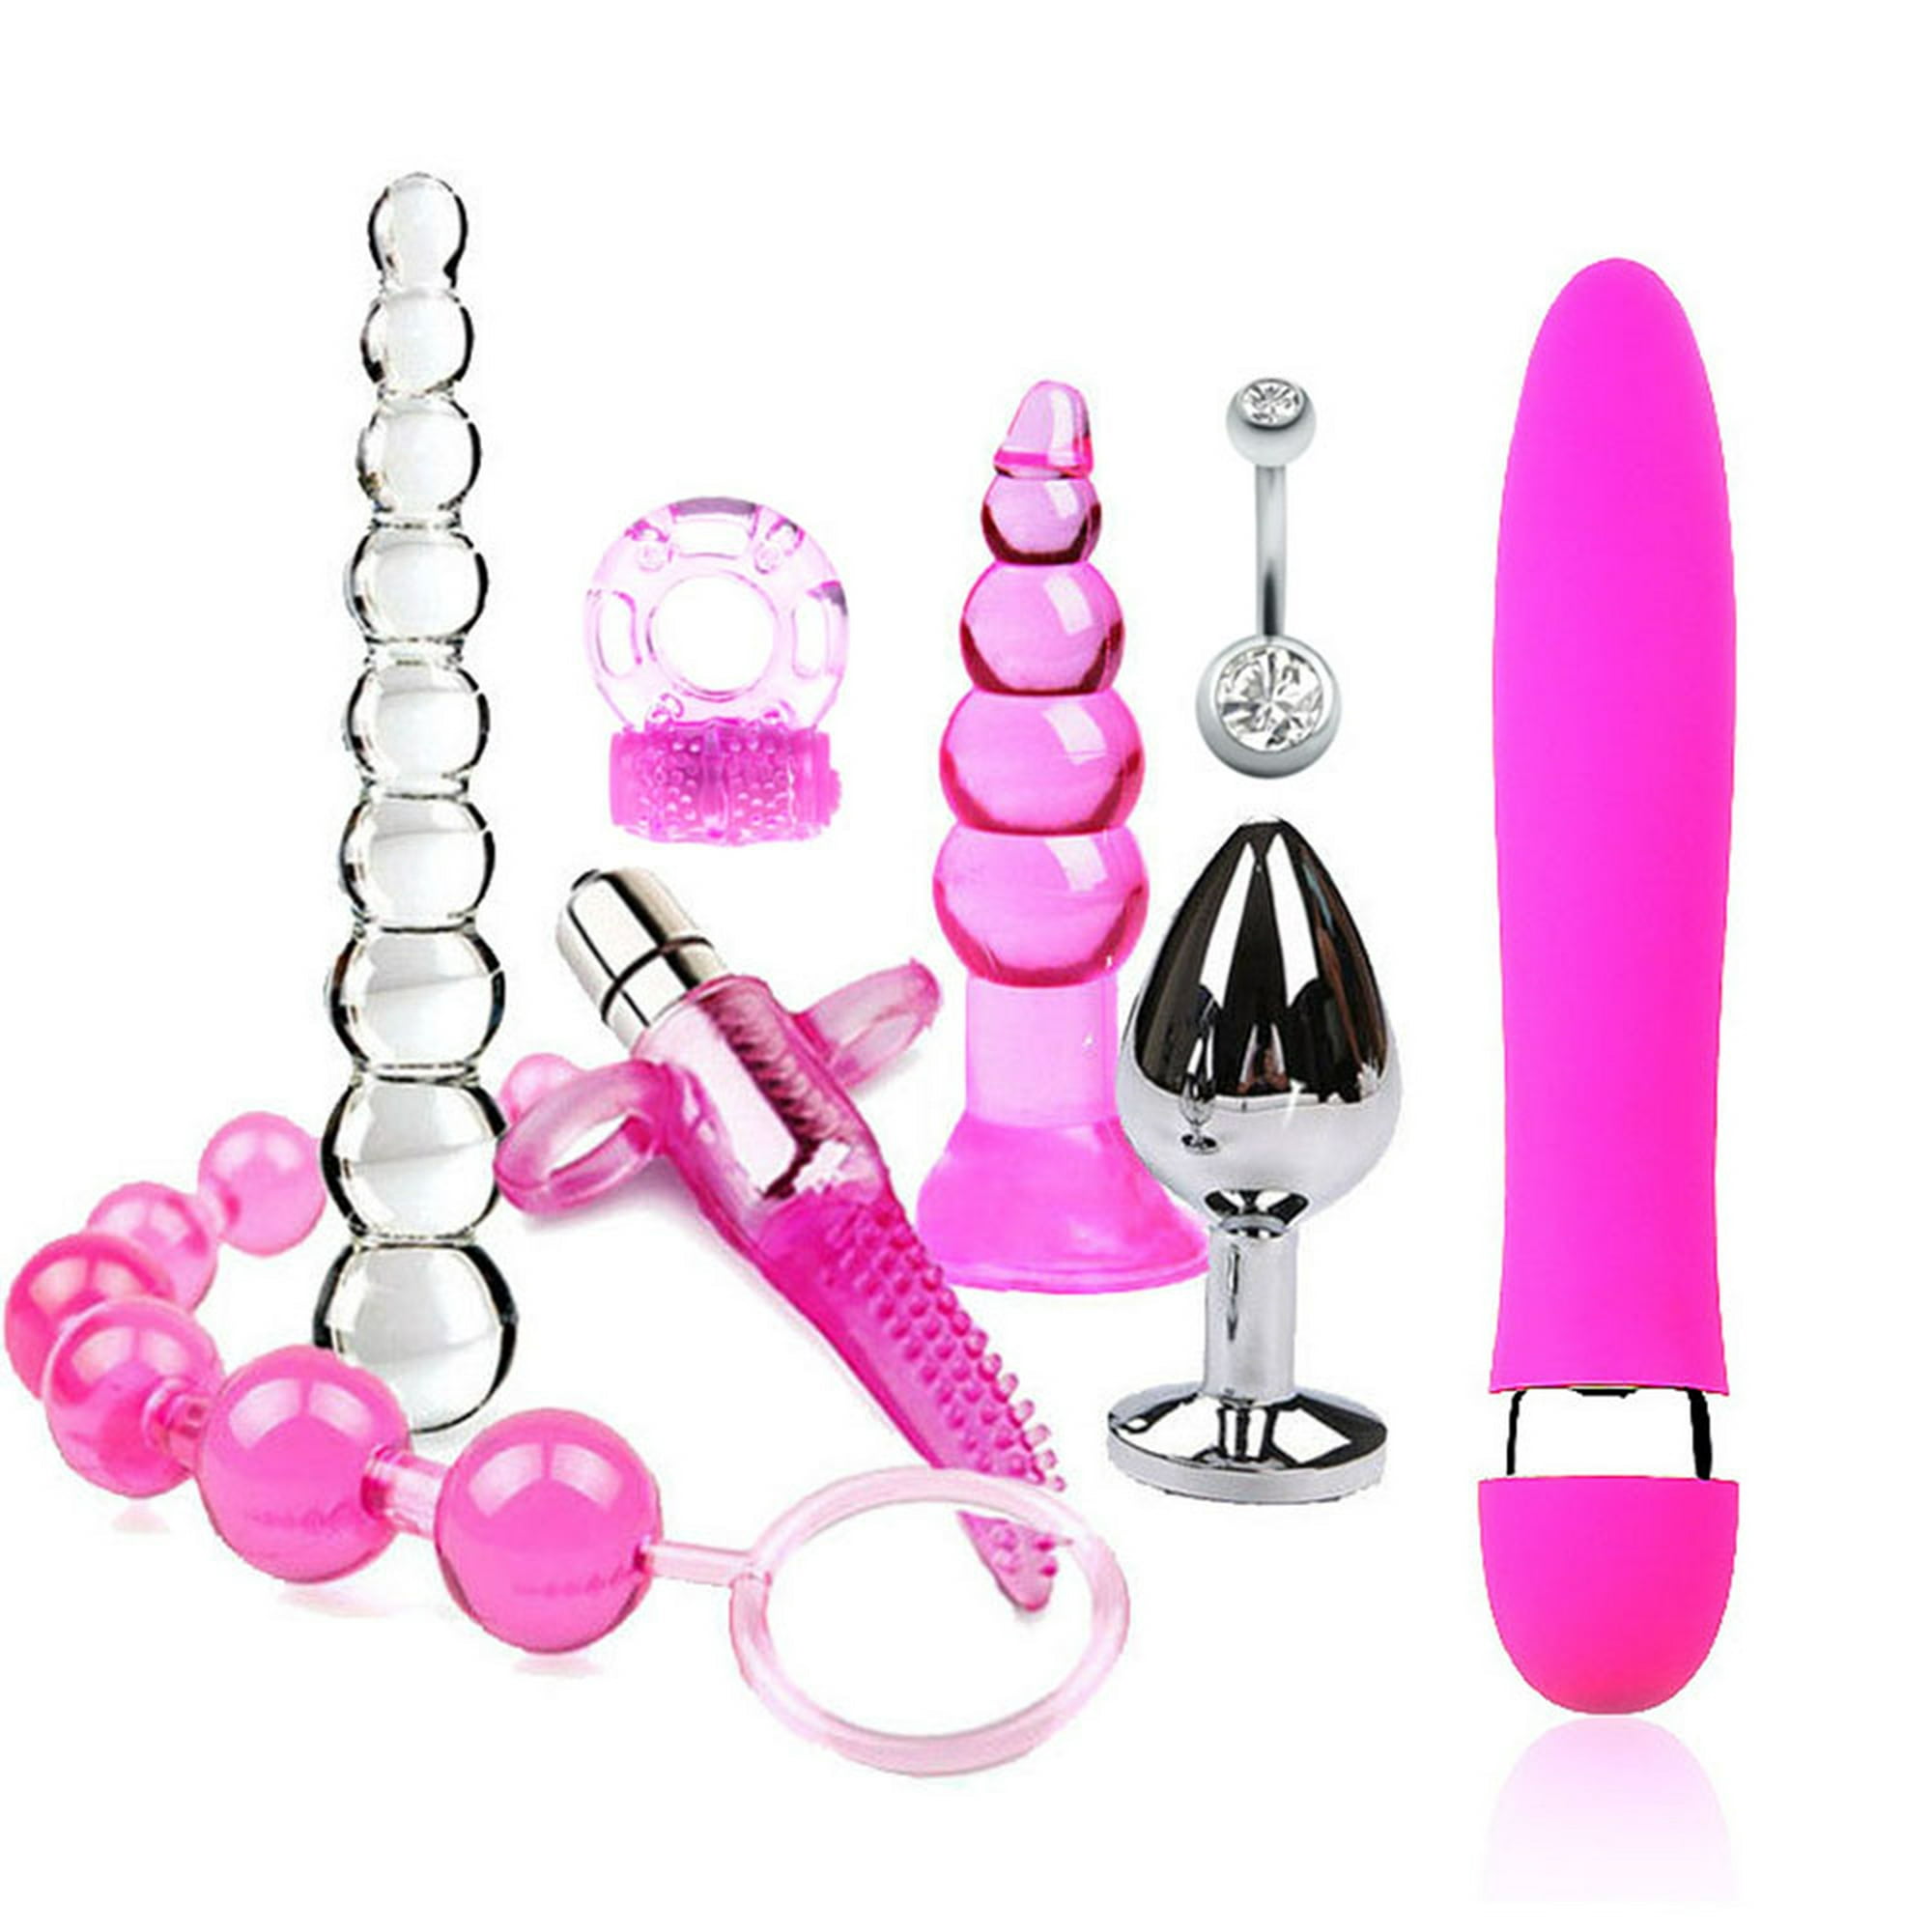 6 Unids/set Kit de Vibrador de Juguetes Sexuales para Adultos Juguetes  Sexuales Privados Flirt Labymos Herramientas vivas